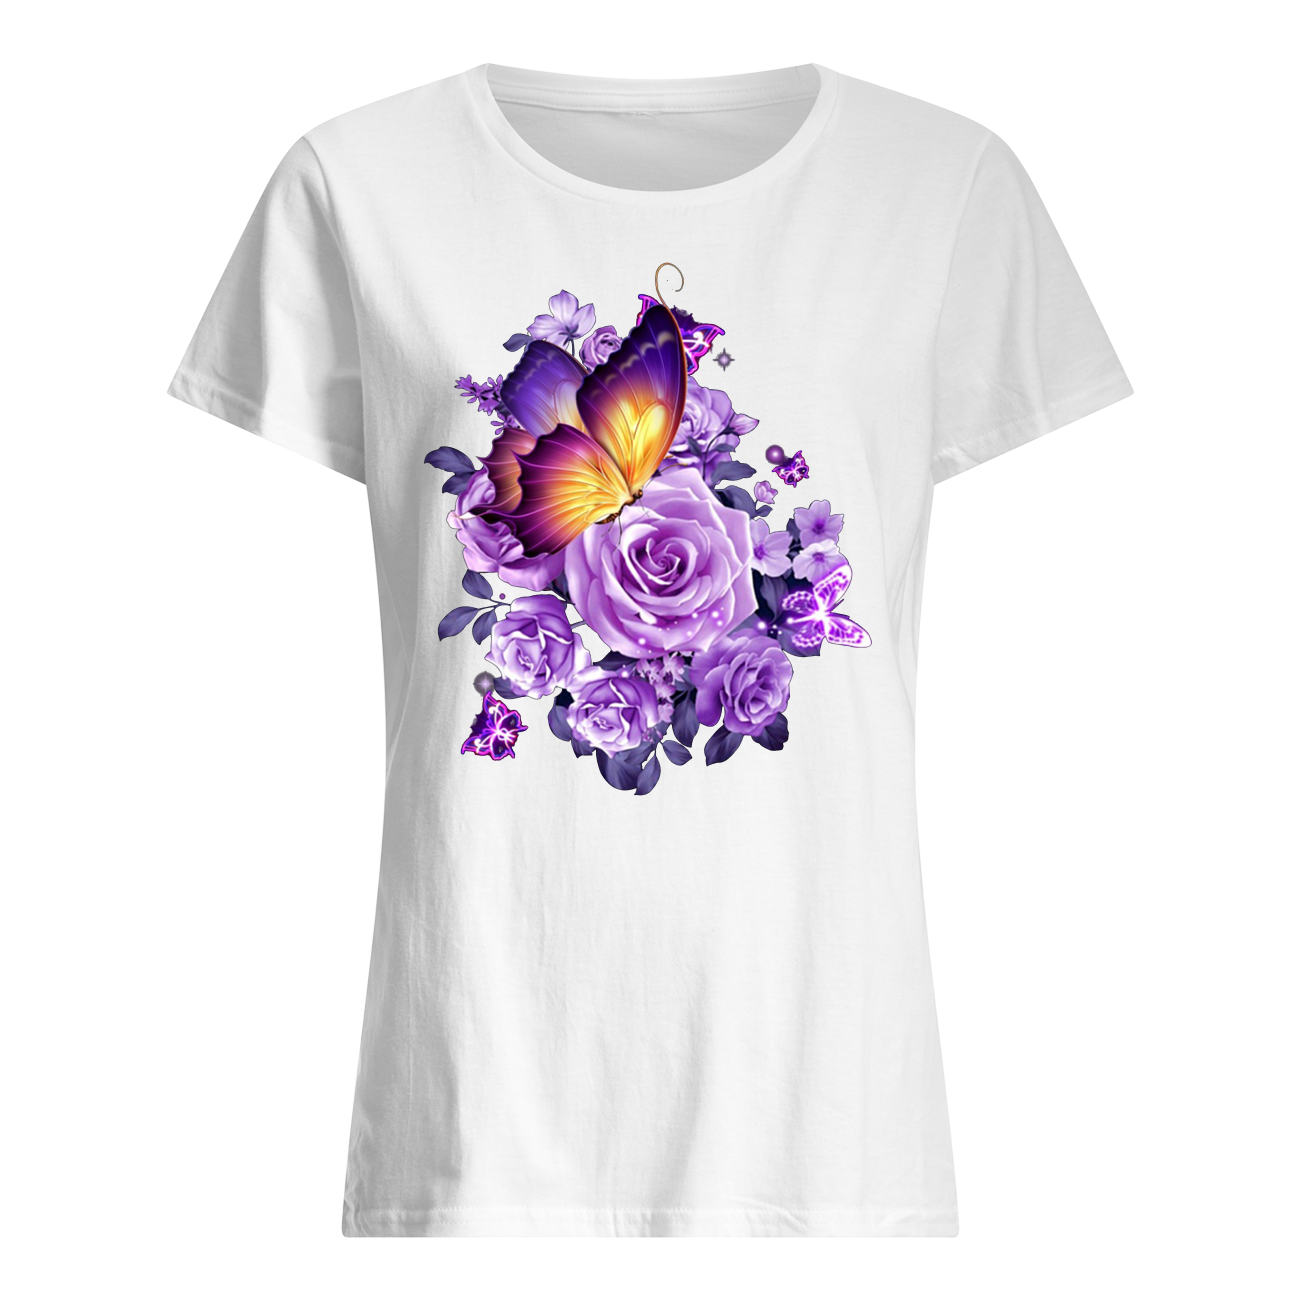 Butterfly purple flowers womens shirt